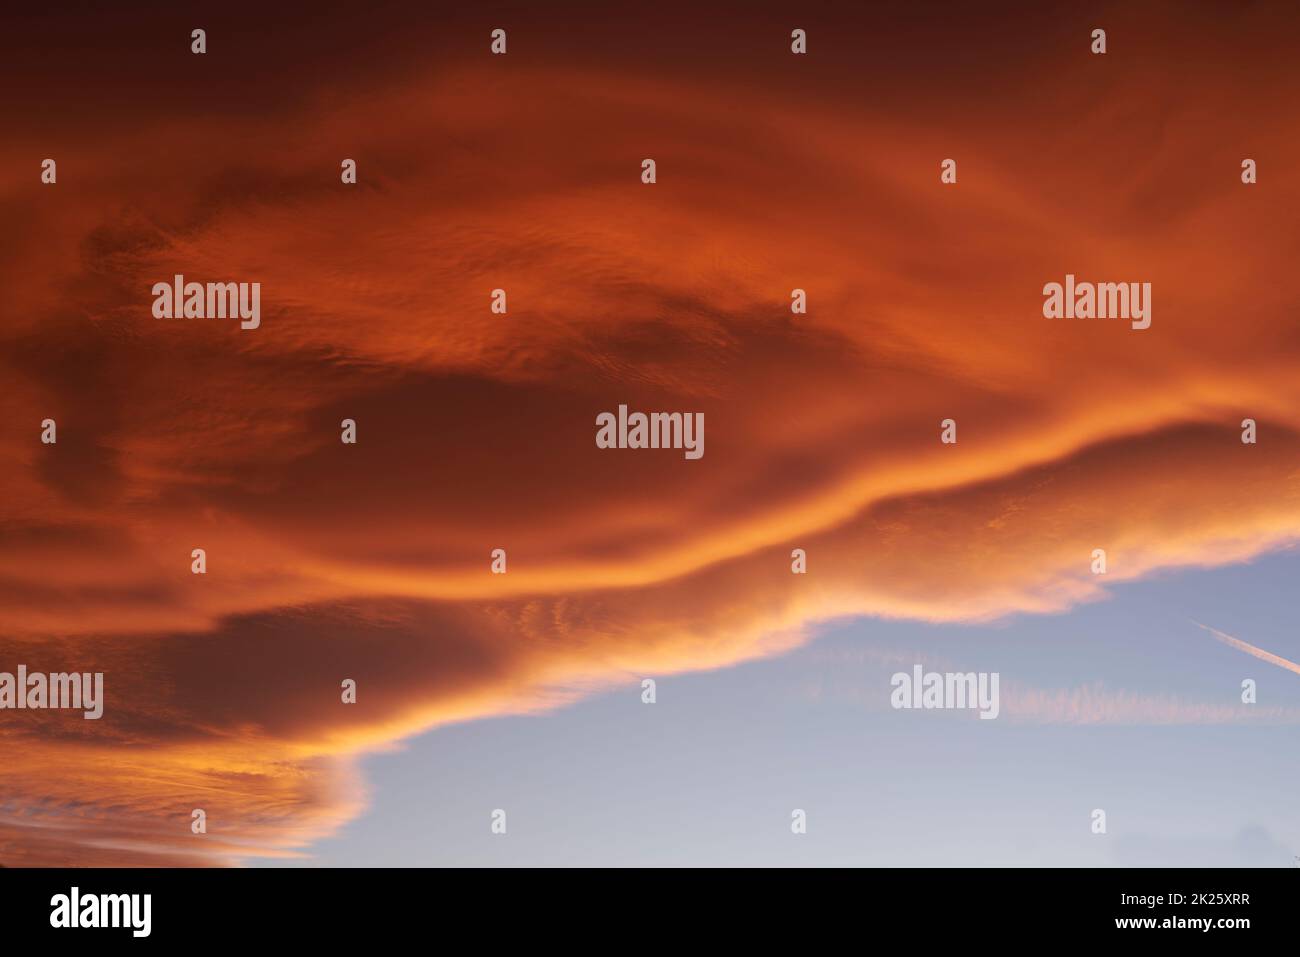 Himmelslicht nach Sonnenuntergang. Orangefarbener Hintergrund, blau Stockfoto